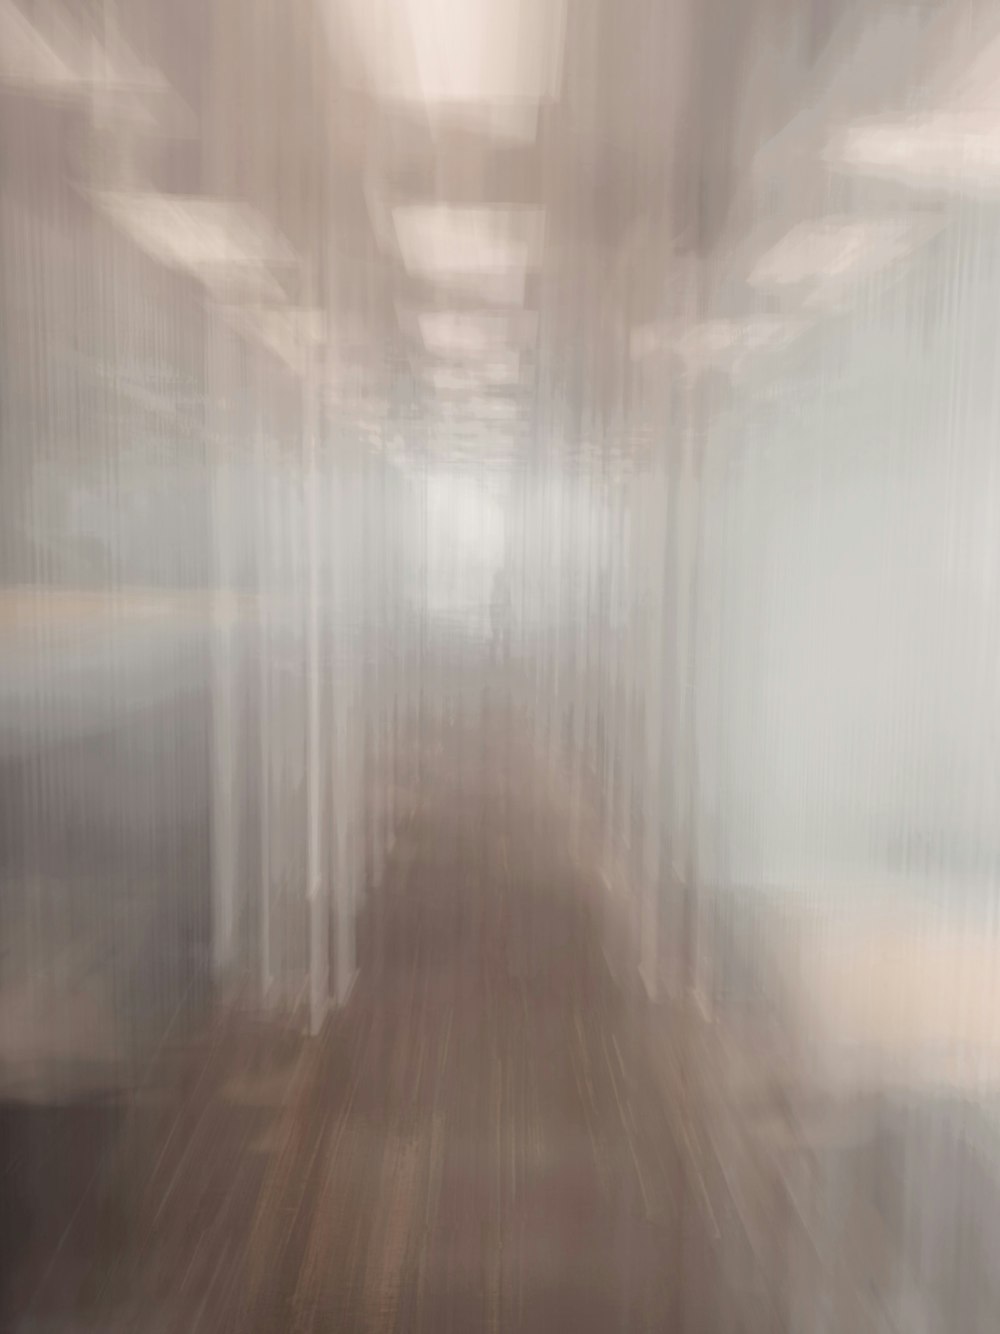 brown wooden parquet floor with white fog